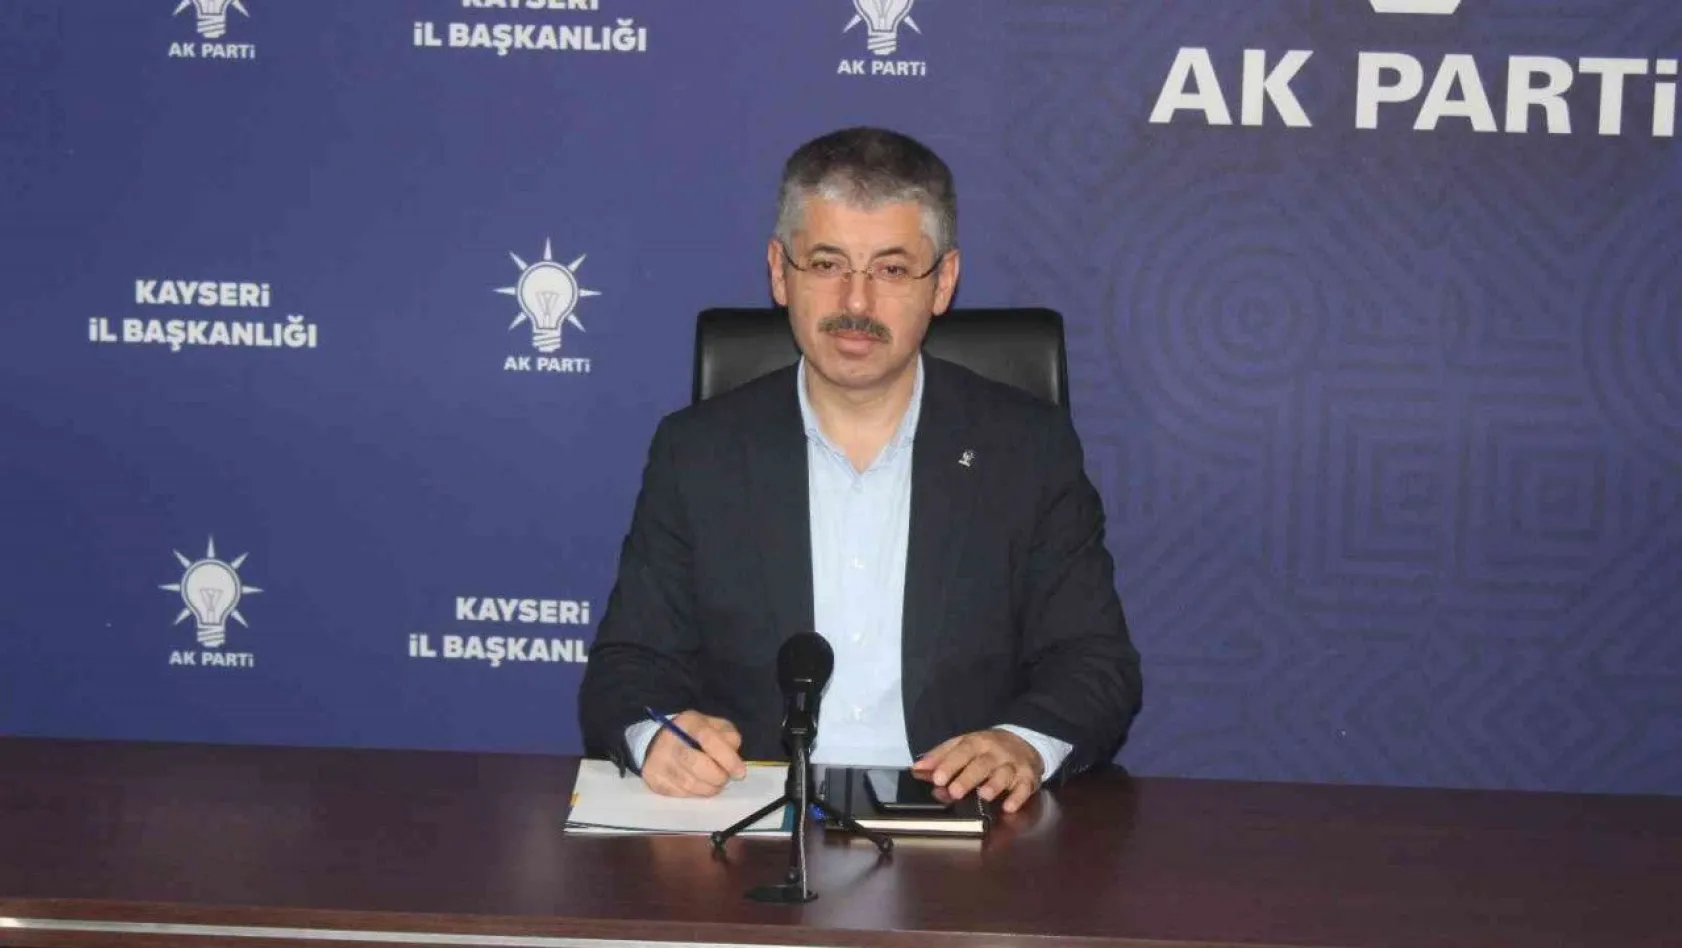 AK Parti İl Başkanı: Ekonomik krizlerle, darbelerle başarılı bir şekilde mücadele ettik!